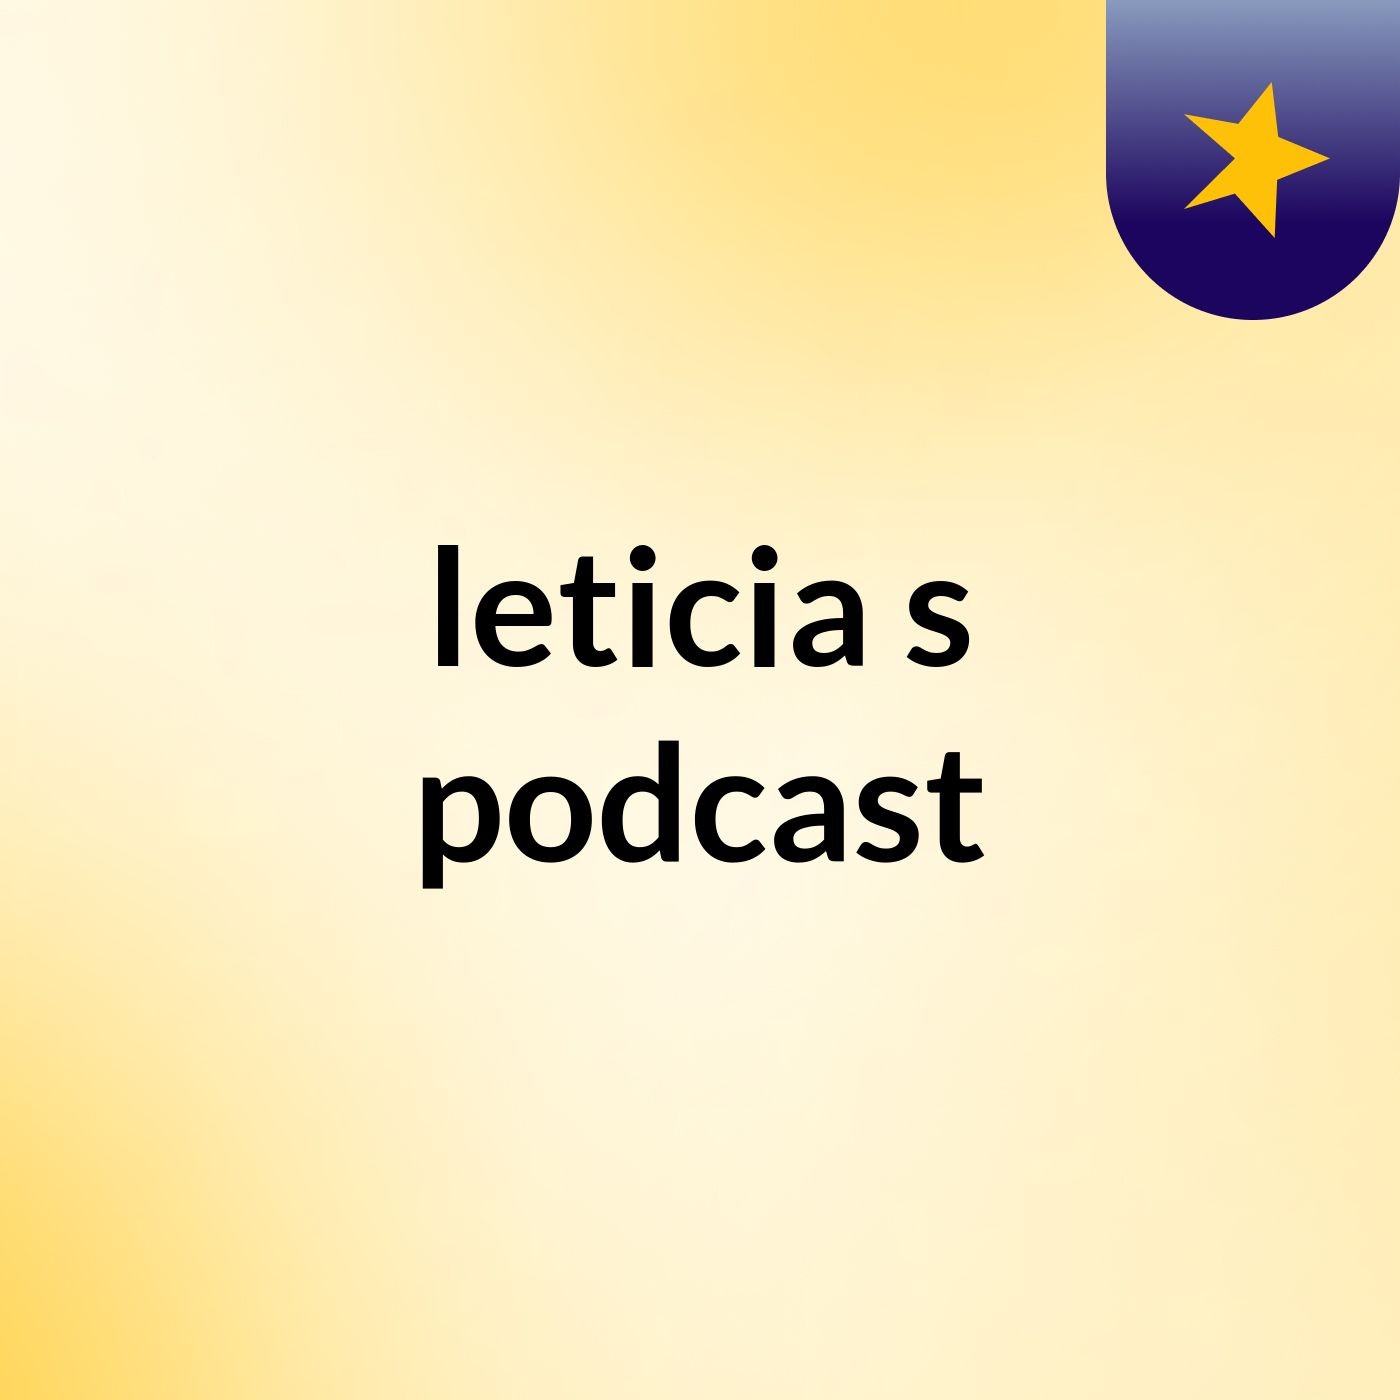 leticia's podcast